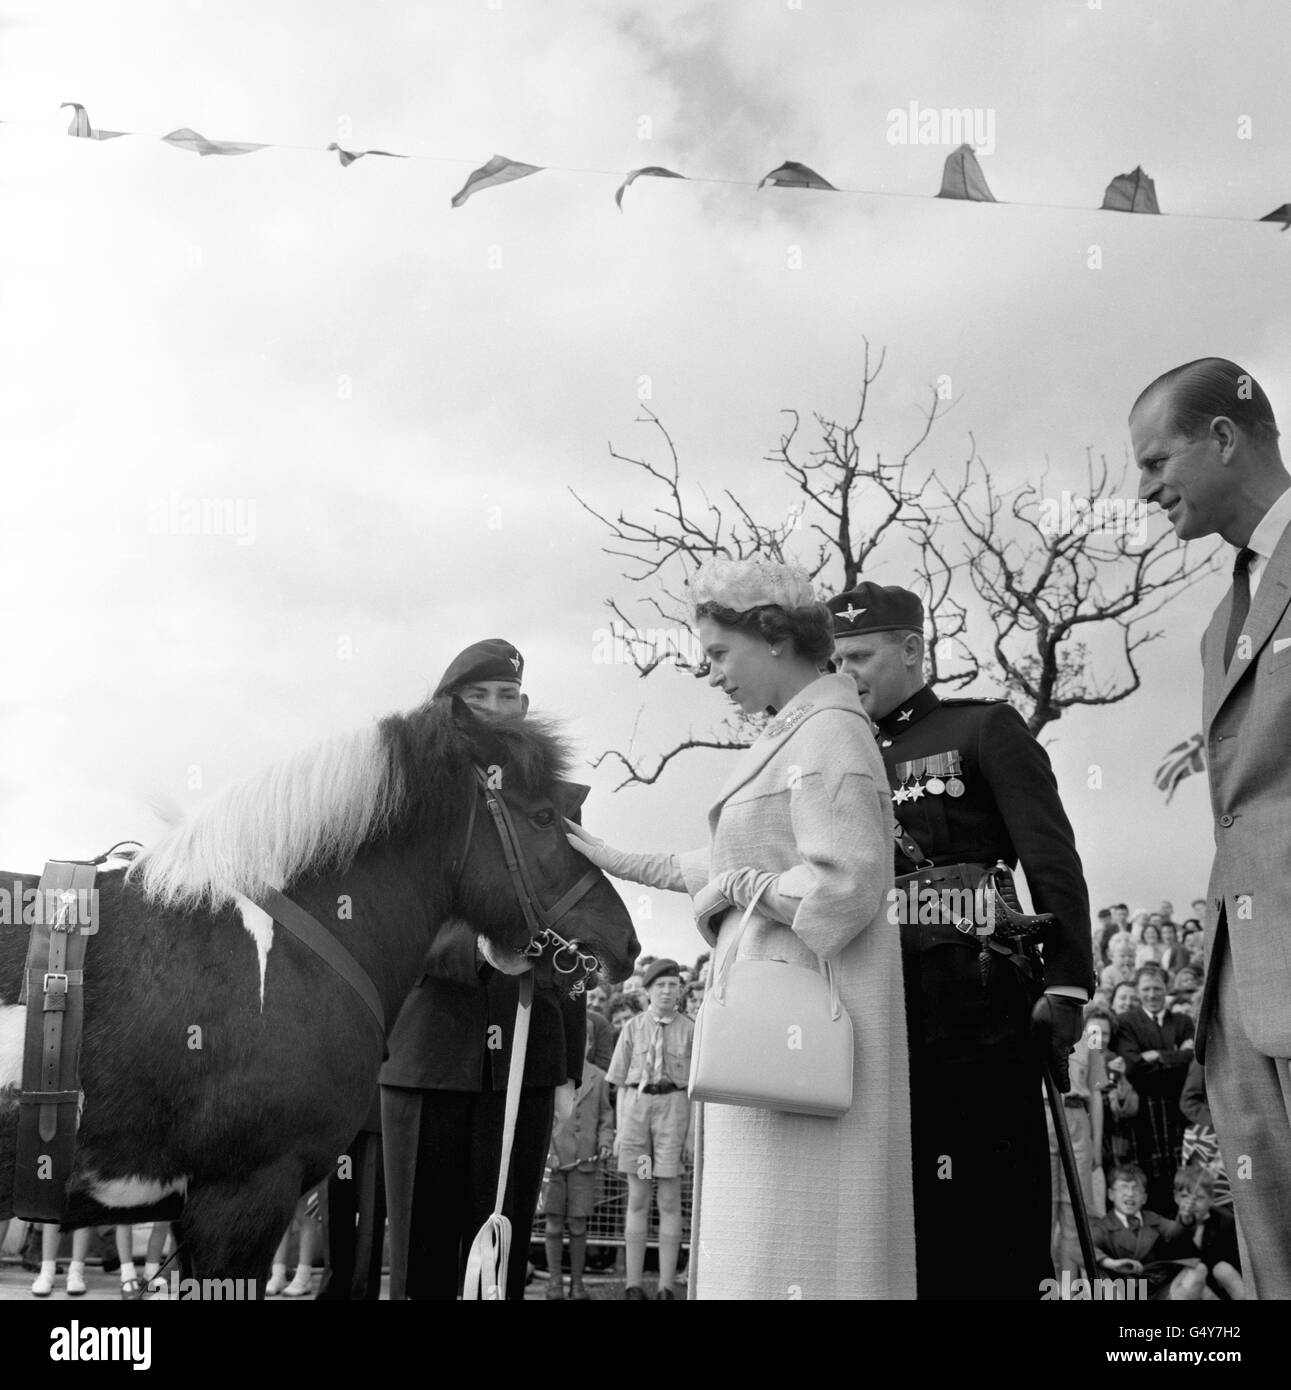 La reine Elizabeth II pats Geordie, mascotte du 17e Bataillon parachute Regiment (9e Durham Light Infantry), lors d'une visite à Peterlee, dans le comté de Durham. Le duc d'Édimbourg se trouve sur la droite. Banque D'Images